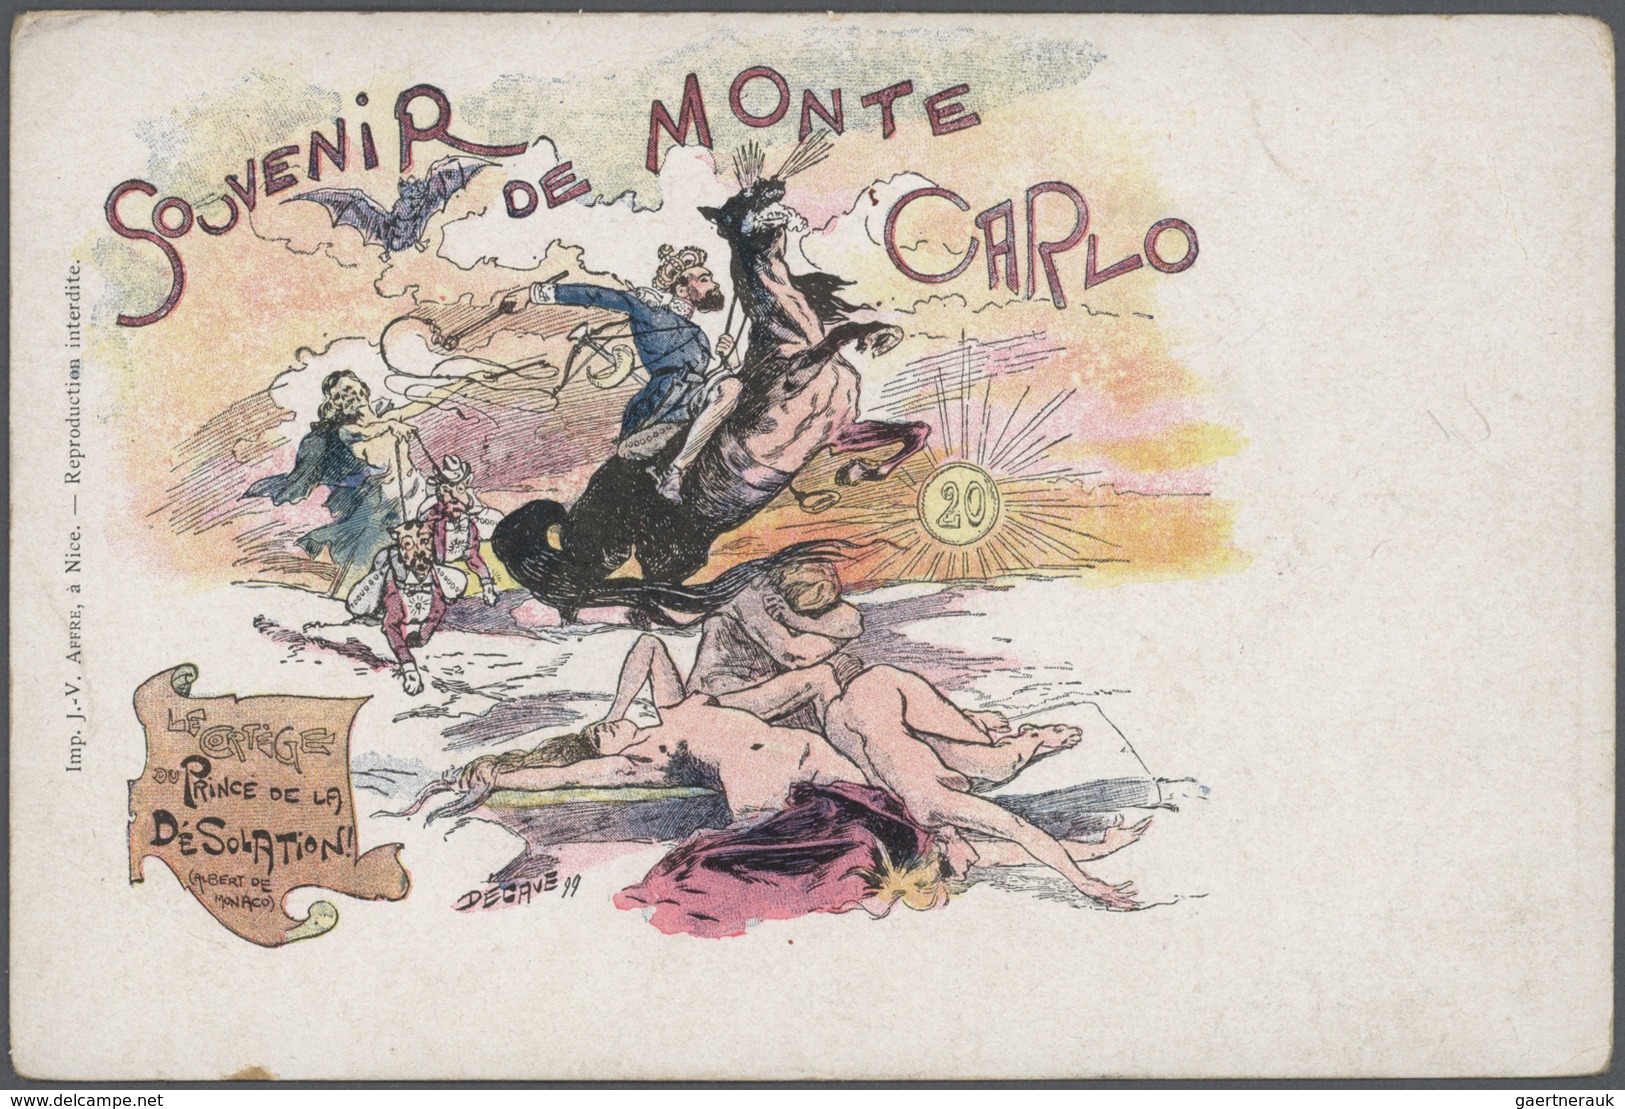 27392 Monaco - Besonderheiten: 1895/1920, Stock of around 1,700 historical picture postcards in common com